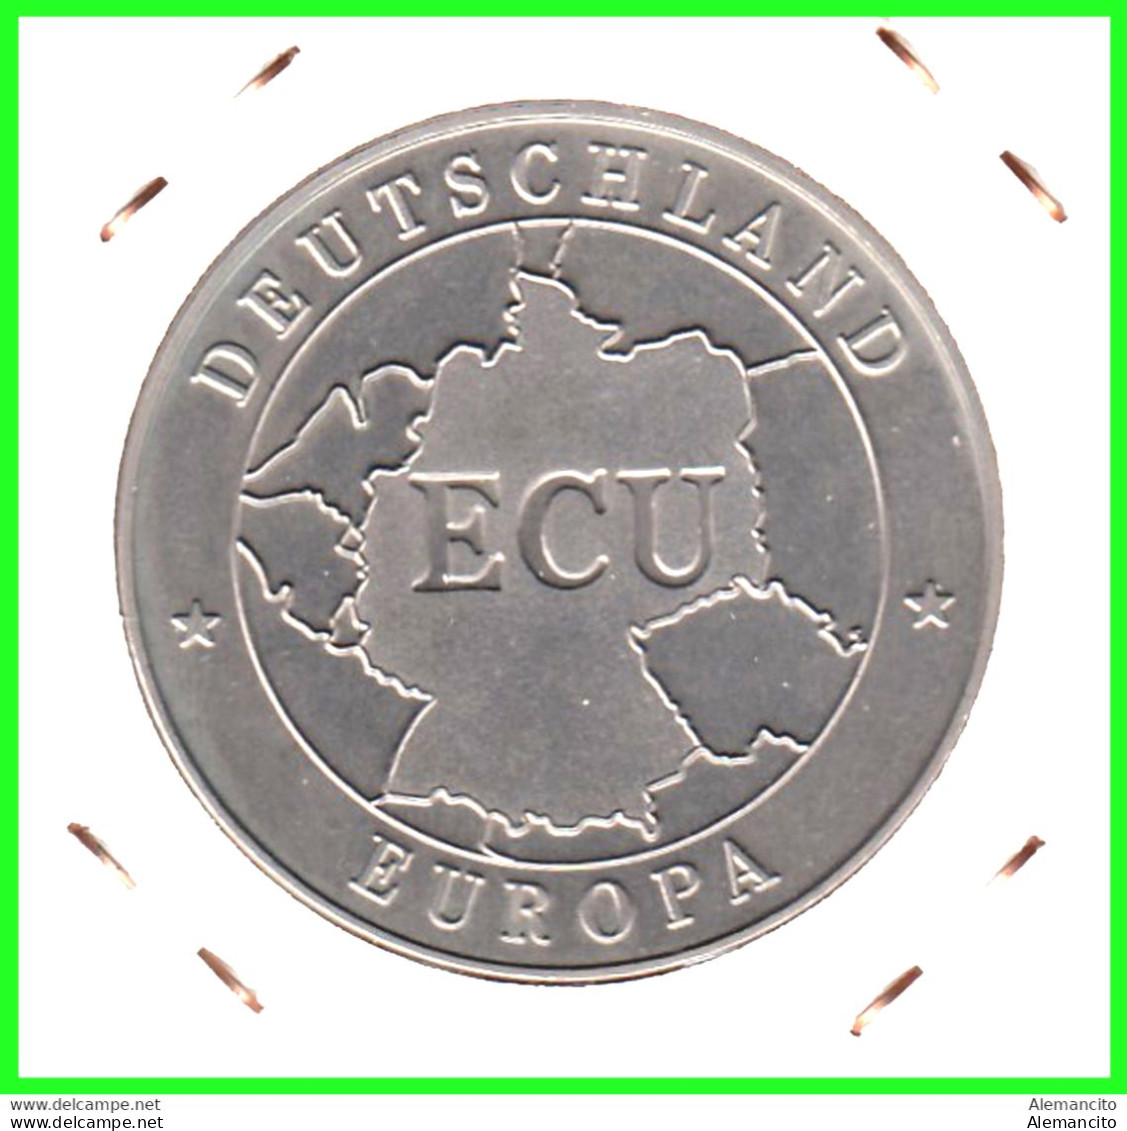 ALEMANIA, ( DEUTSCHLAND ) MONEDA VALOR 1-ECU EUROPA - 1992 / EINIGKEIT RECHT FREIHEIT - Mint Sets & Proof Sets